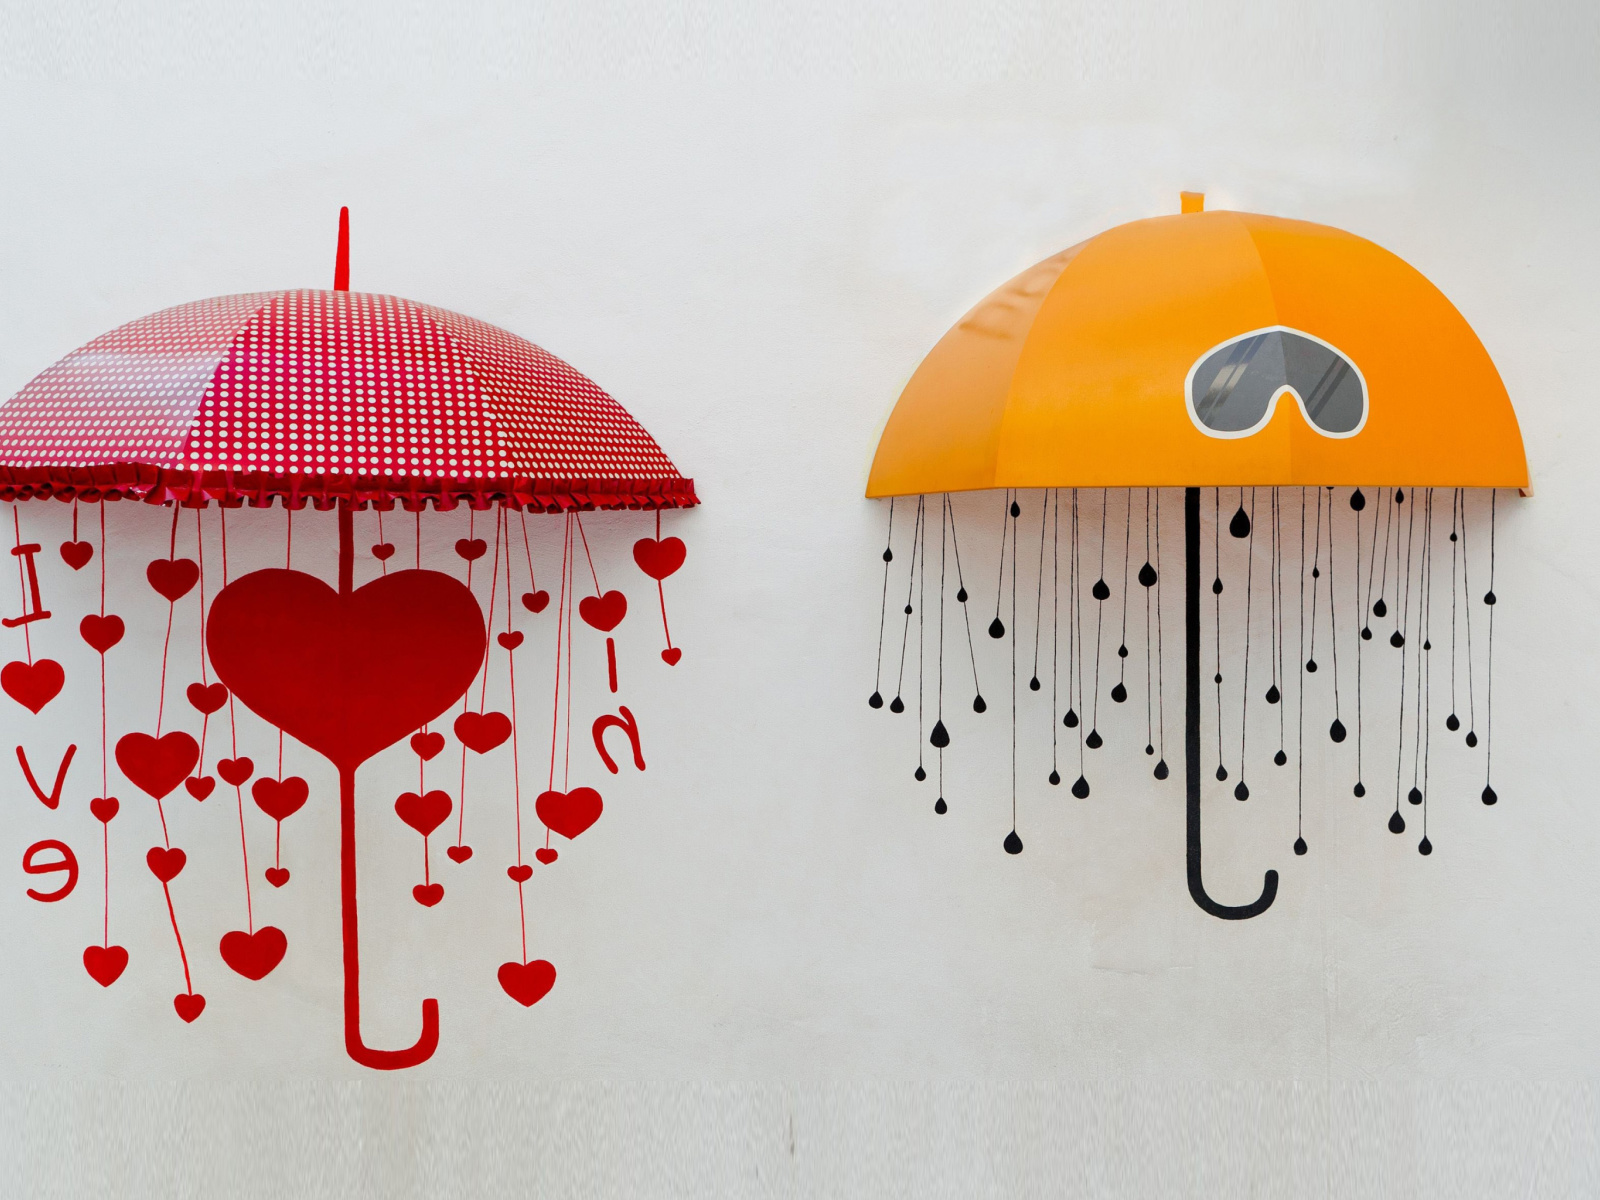 Das Two umbrellas Wallpaper 1600x1200